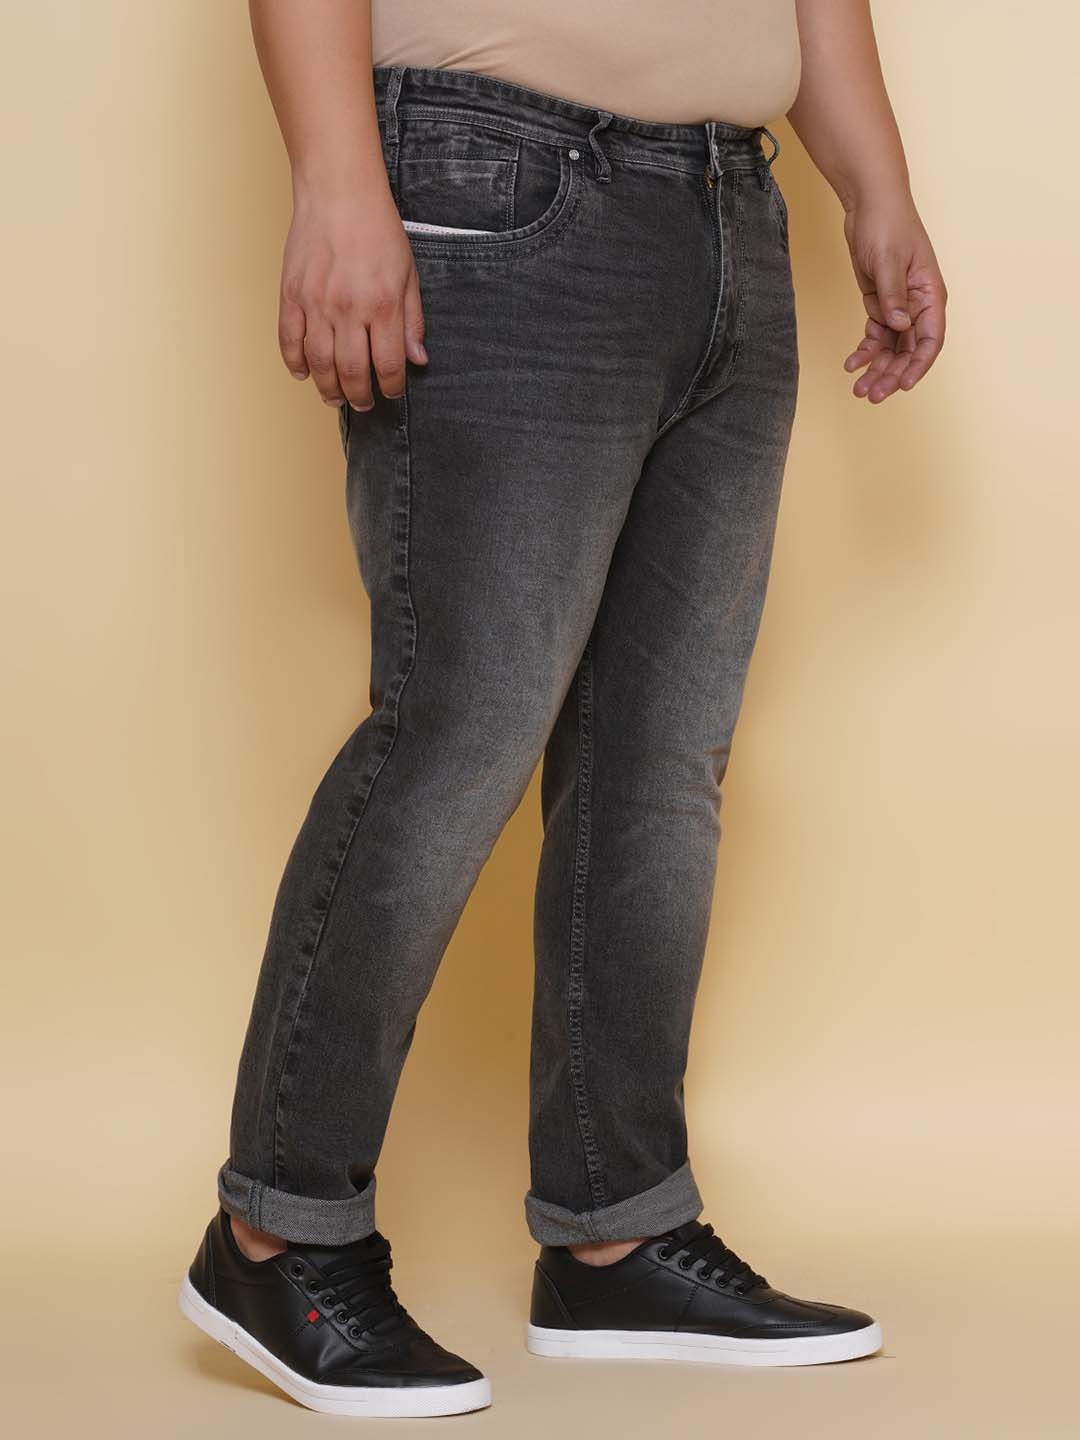 bottomwear/jeans/EJPJ25136/ejpj25136-3.jpg